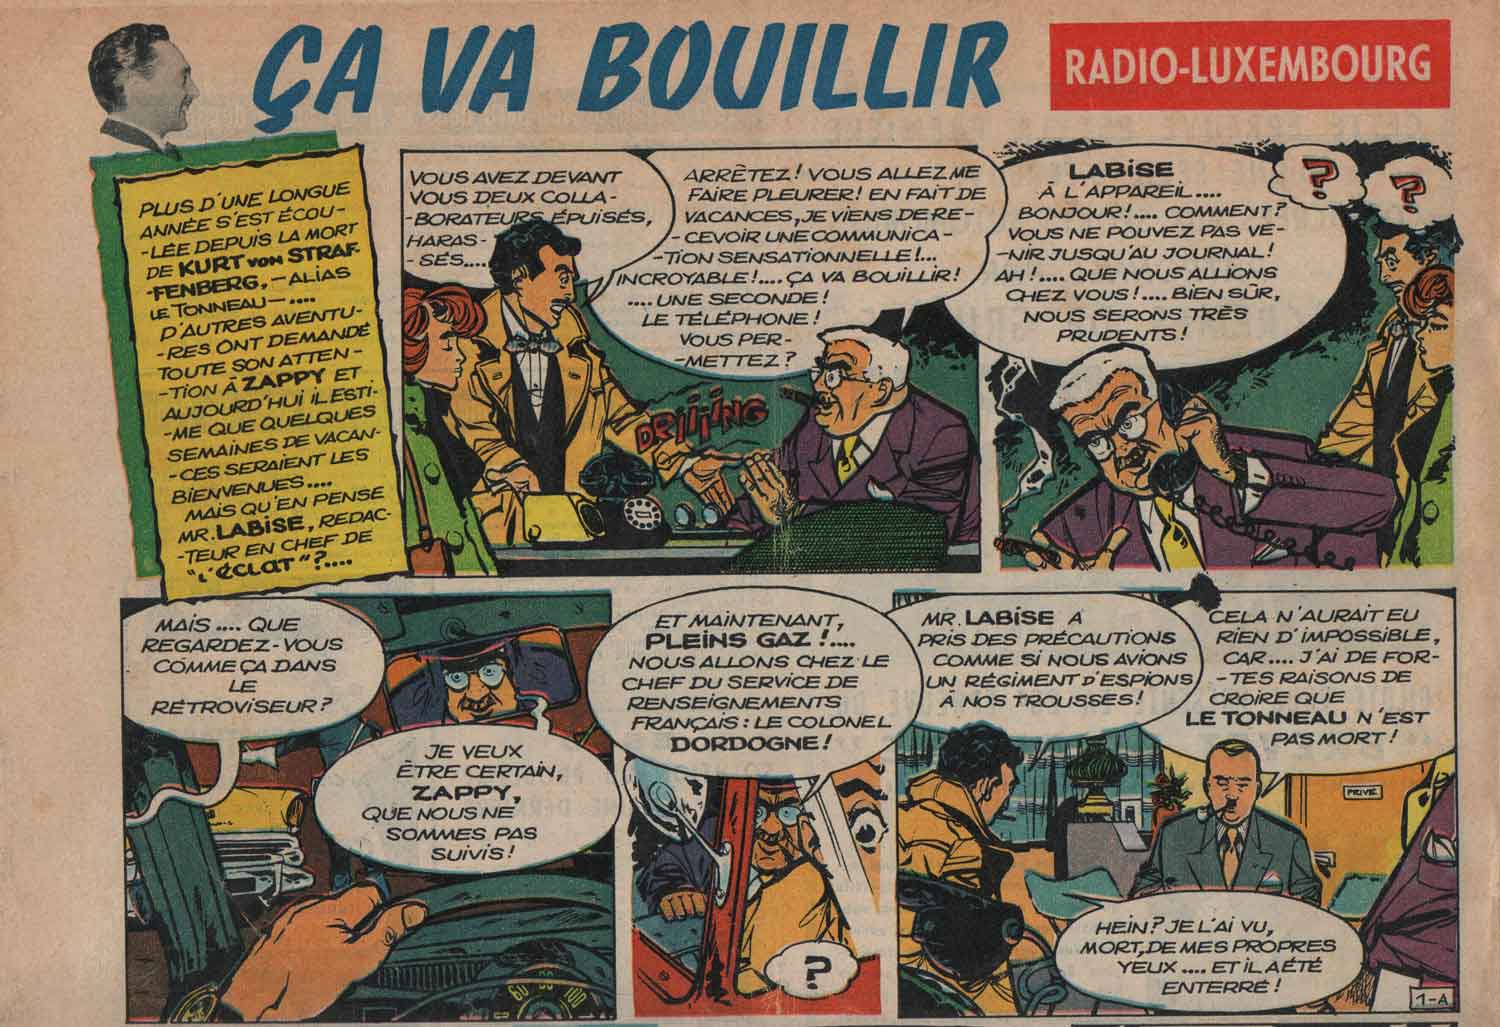 « Ça va bouillir » planche 1 dans Pilote n° 70 (23/02/1961).